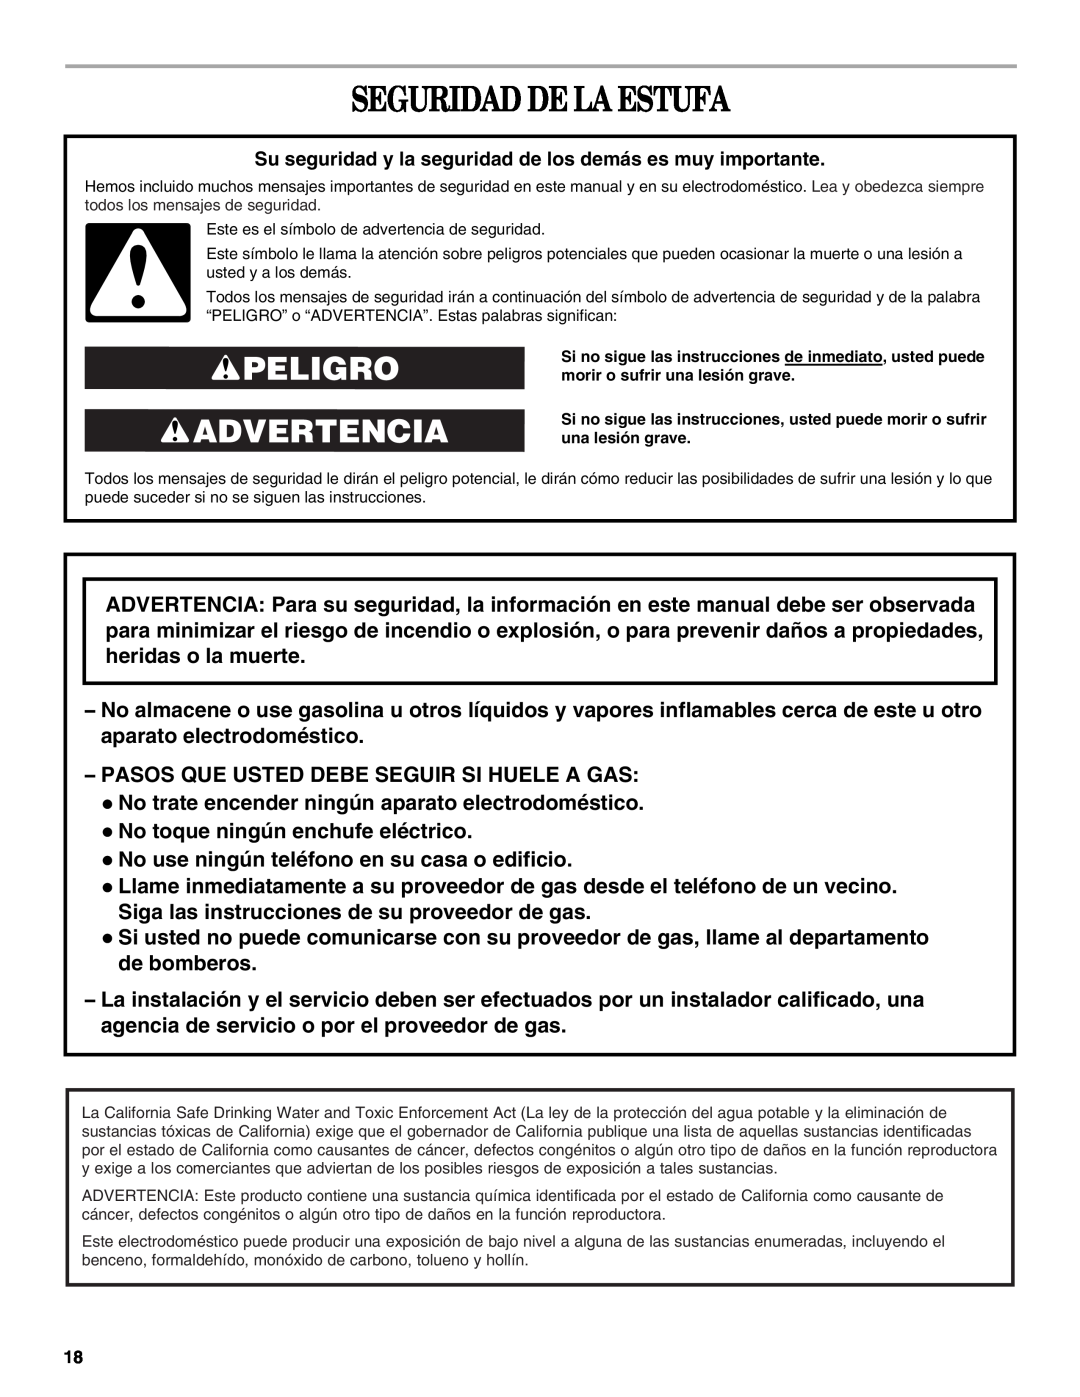 Whirlpool SF315PEPB3 manual Seguridad De La Estufa, Peligro Advertencia 